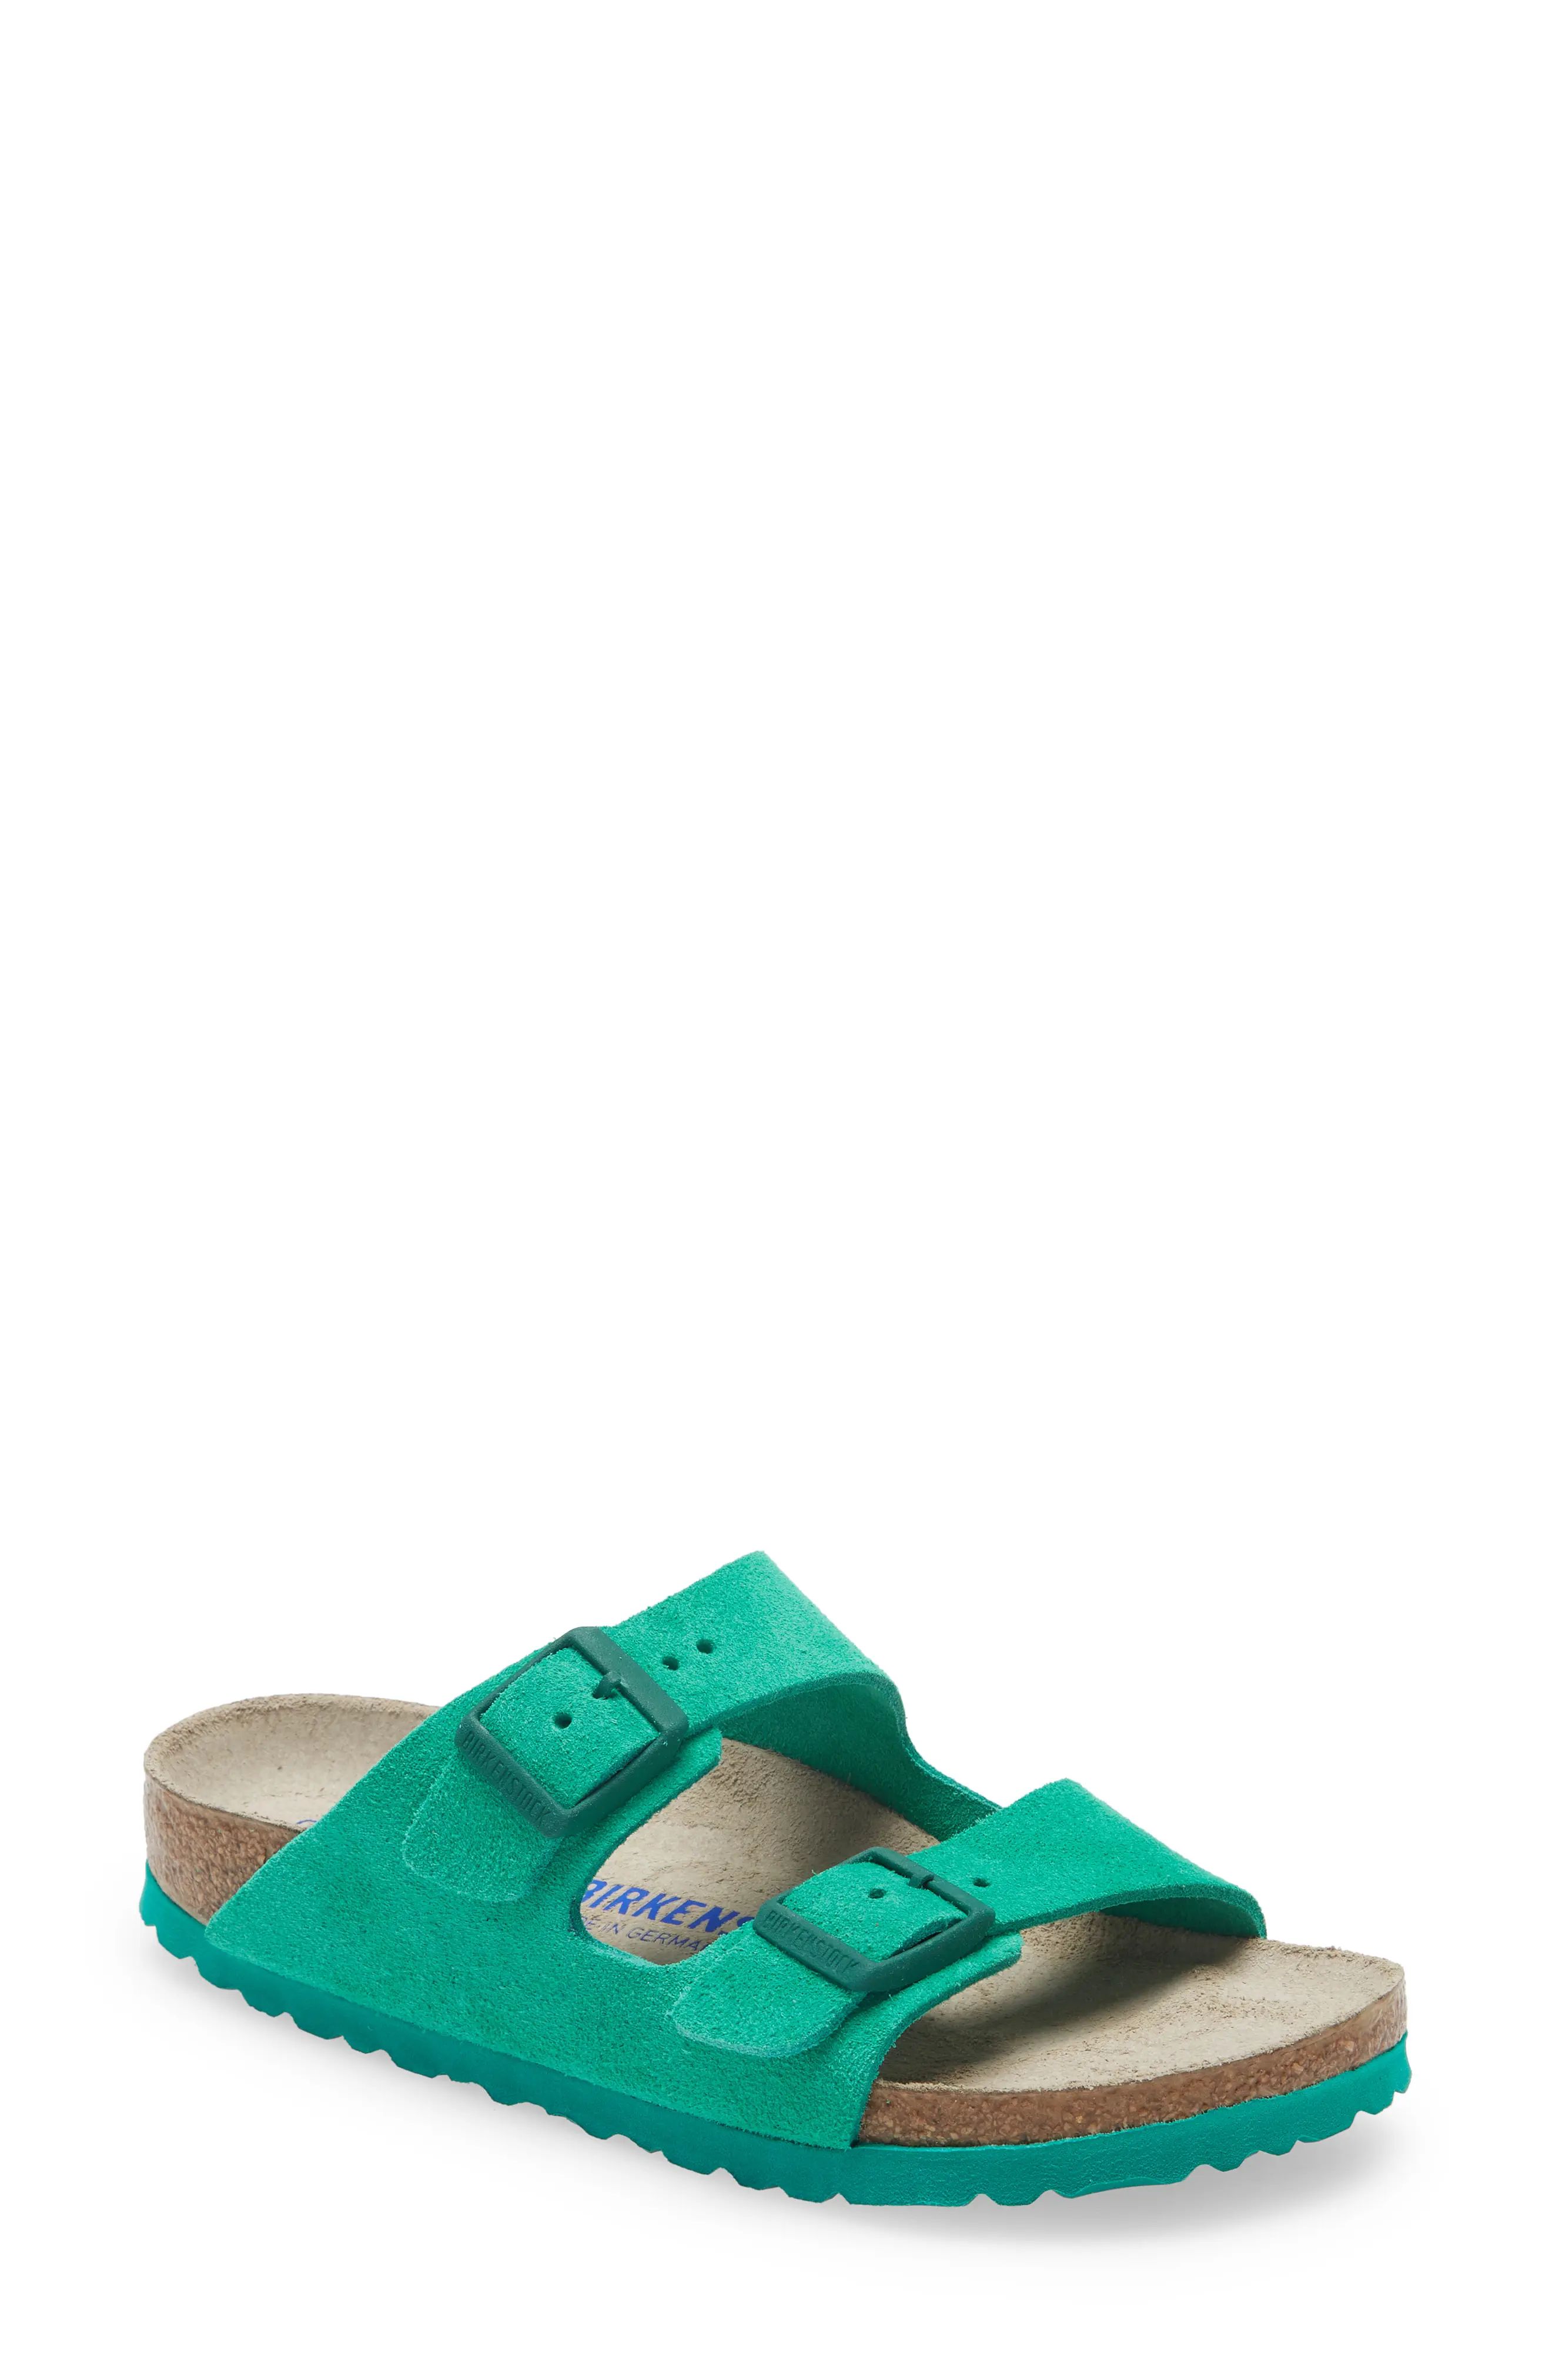 Birkenstock Arizona Soft Slide Sandal in Bold Green Suede at Nordstrom, Size 8-8.5Us | Nordstrom